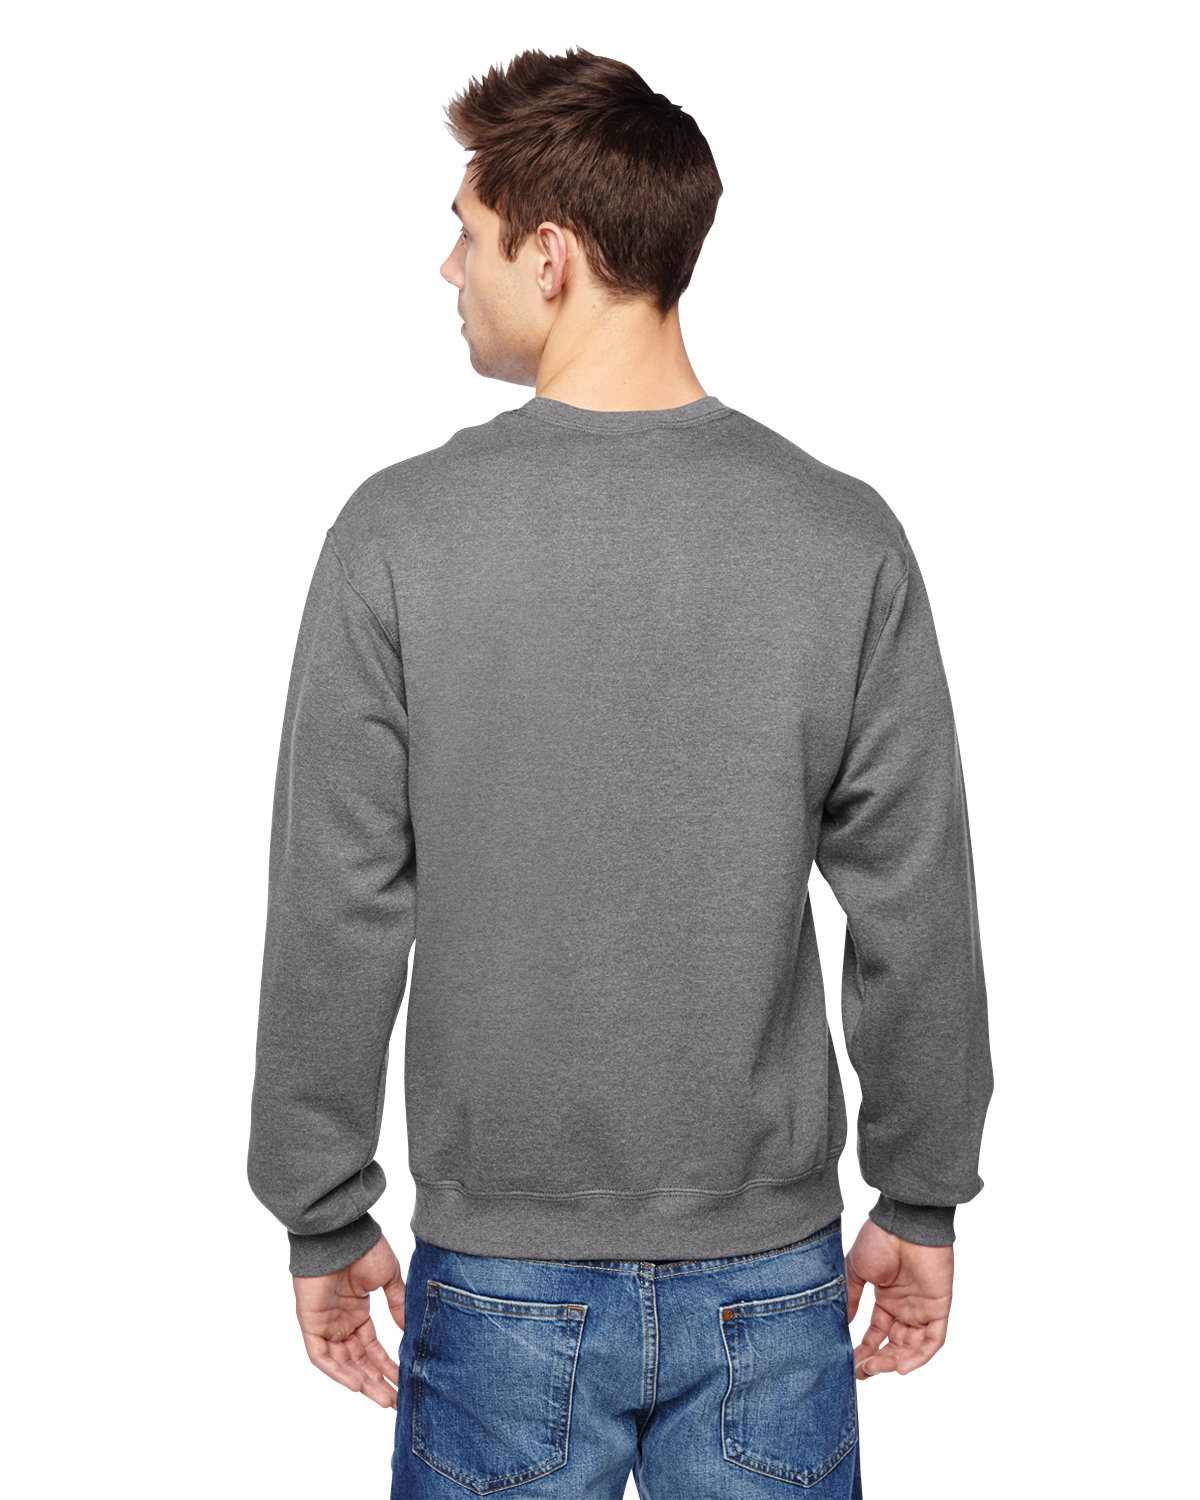 Men's Fleece Crew Sweatshirt - image 2 of 3